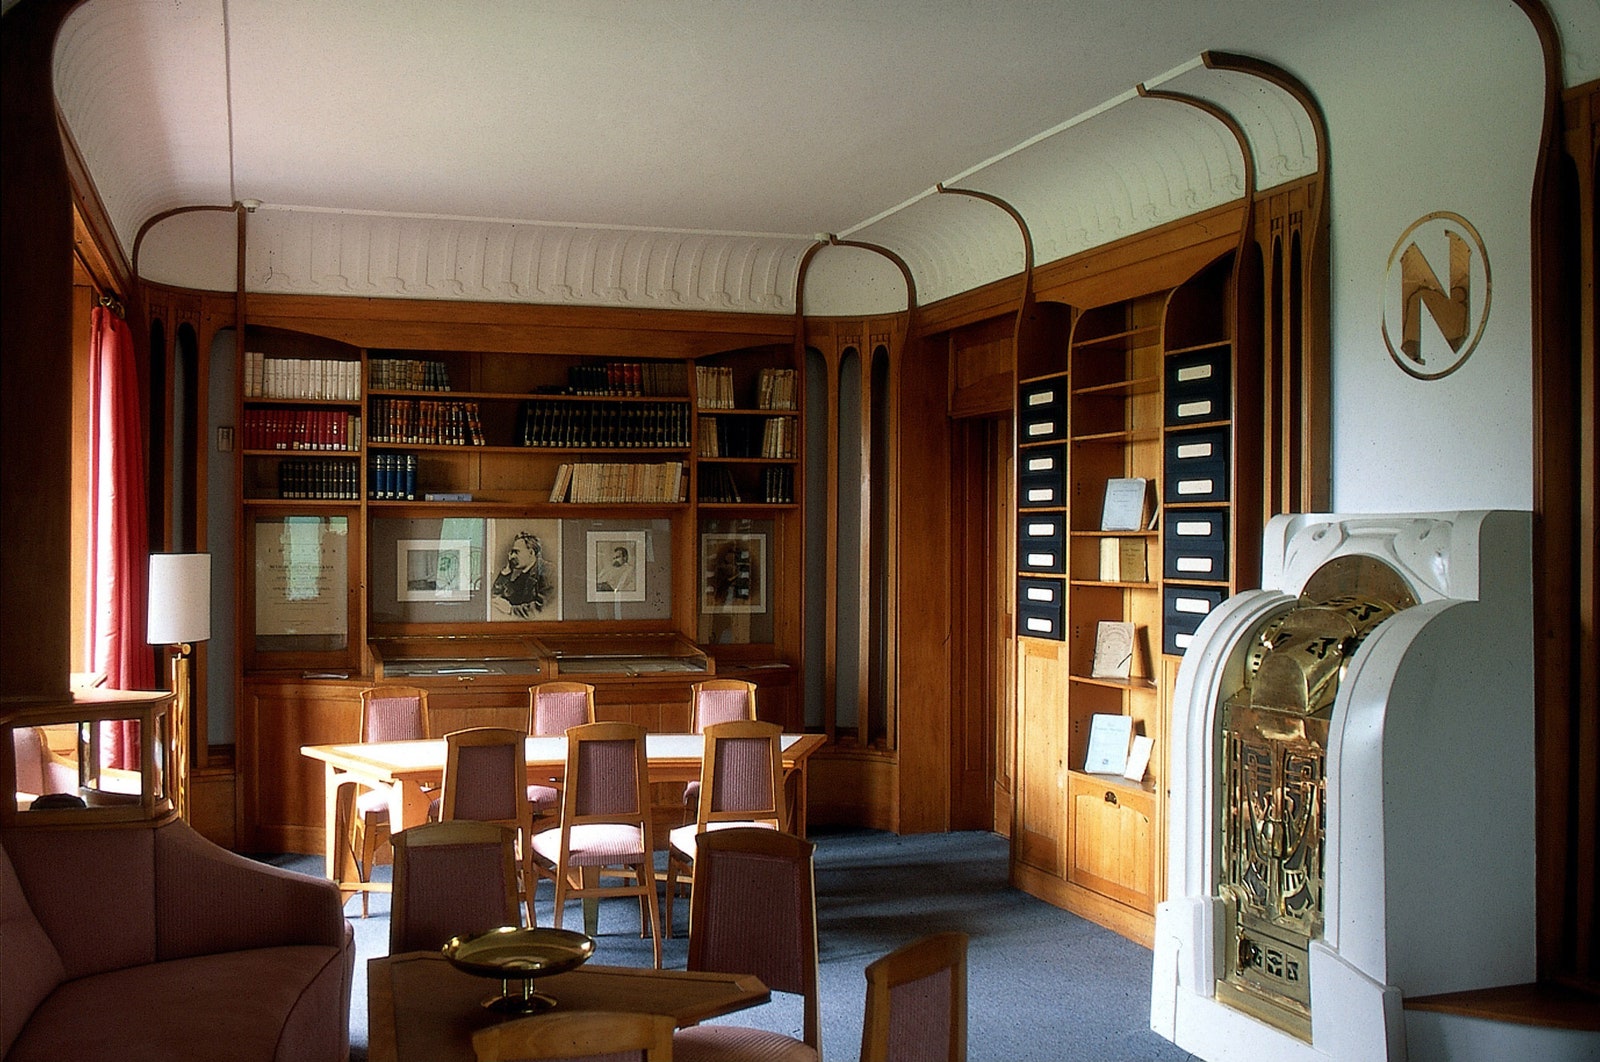 Интерьеры архива Ницше в Веймаре автор проекта — Анри ван де Вельде.